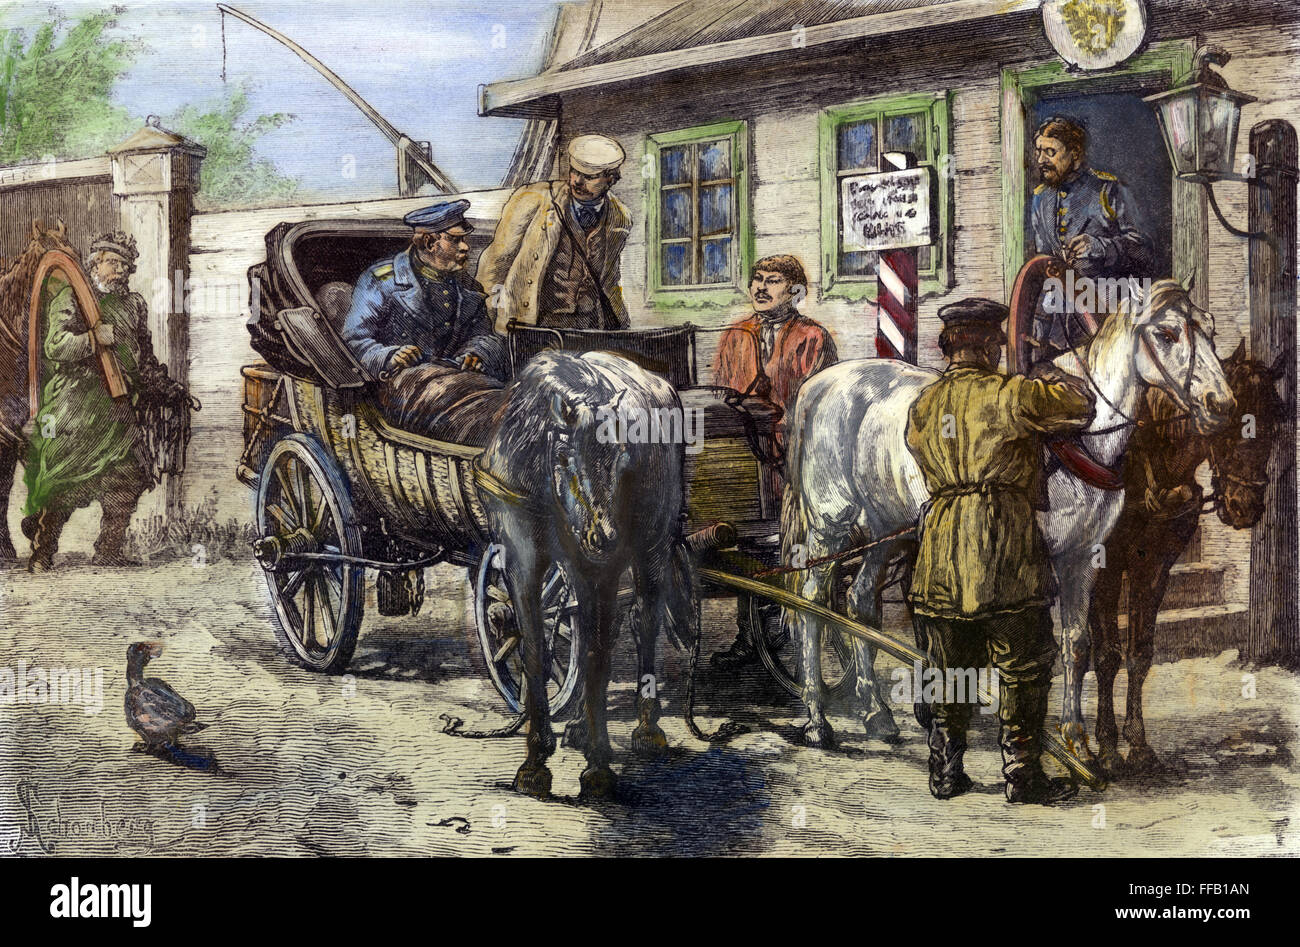 RUSSIA: Siberia, 1882. /Nla modifica di cavalli presso un ufficio postale durante il viaggio in Siberia. Incisione su legno, inglese, 1882. Foto Stock